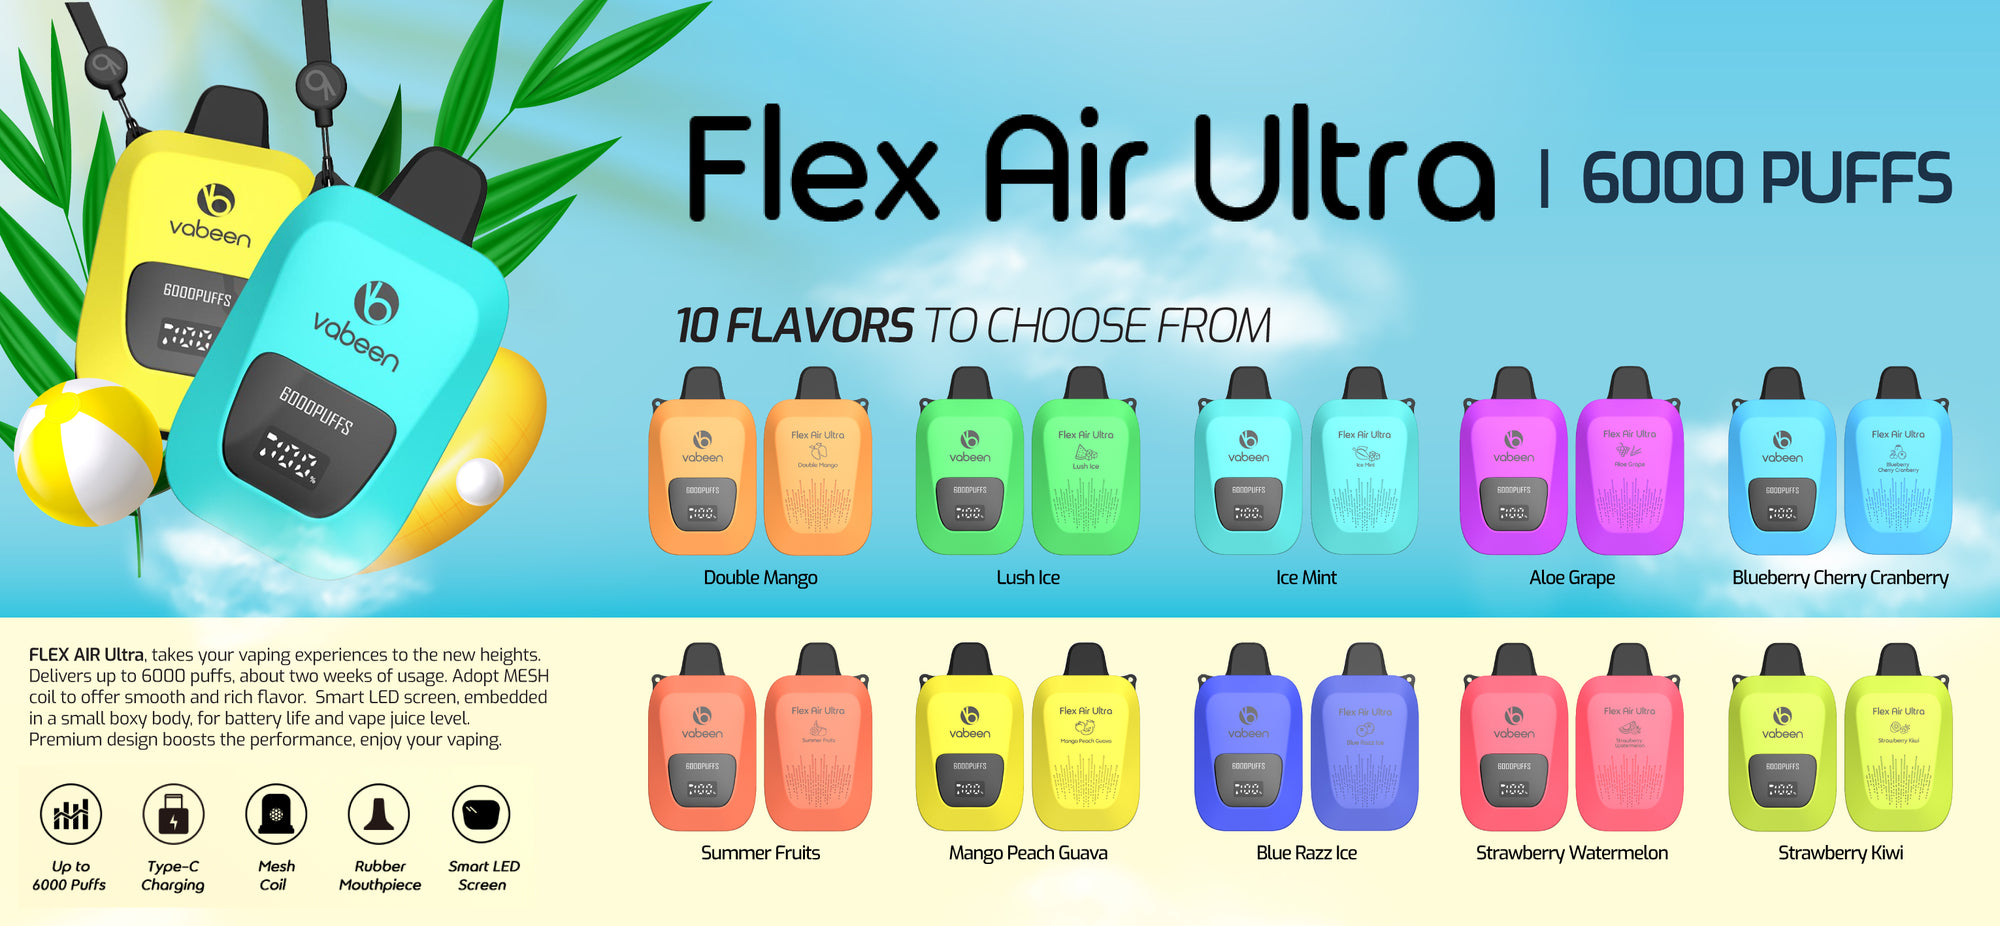 Flex Air ULTRA - 6000 Puff